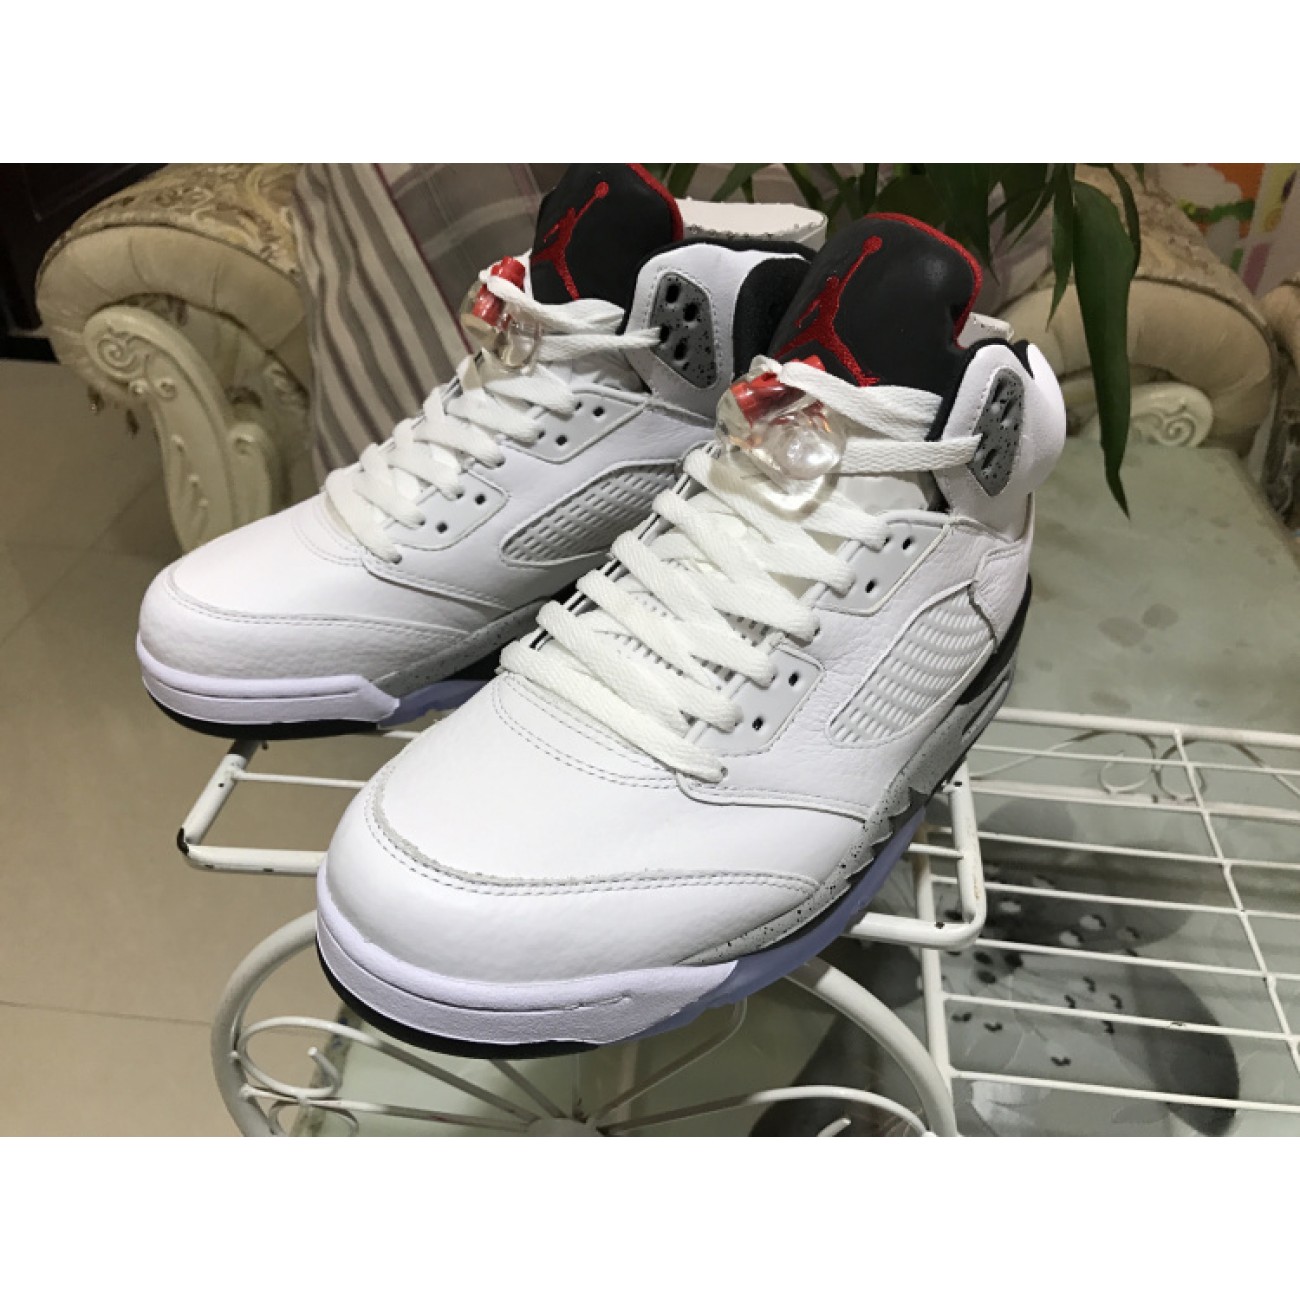 Air Jordan 5 "White Cement" 136027-104